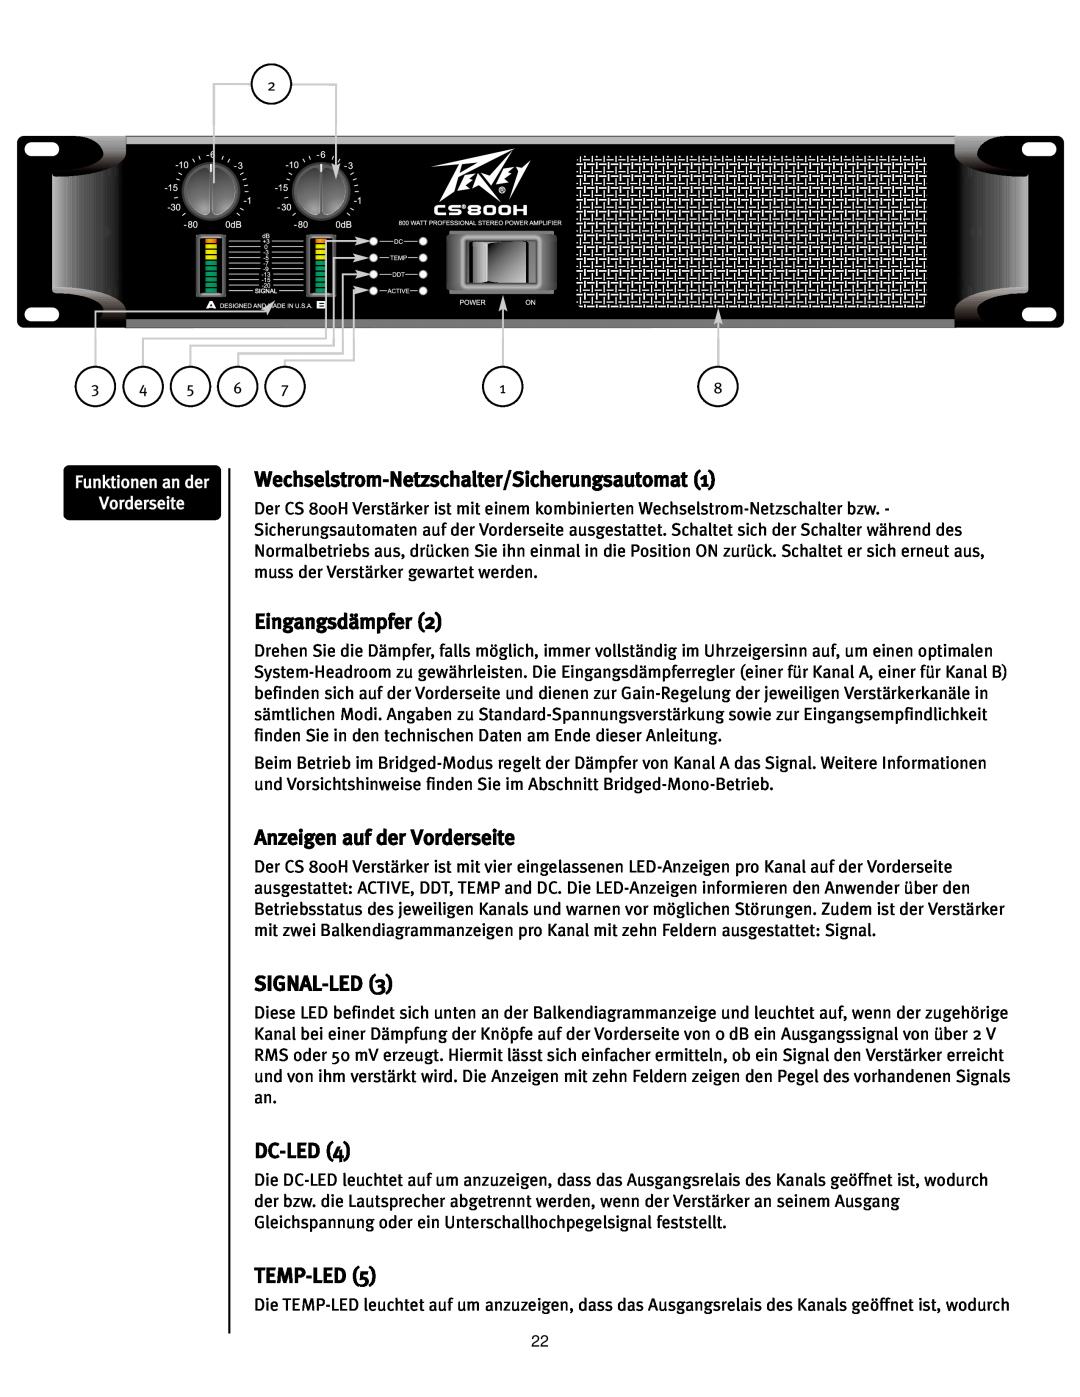 Peavey CS 800H Wechselstrom-Netzschalter/Sicherungsautomat1, Eingangsdämpfer, Anzeigen auf der Vorderseite, SIGNAL-LED3 